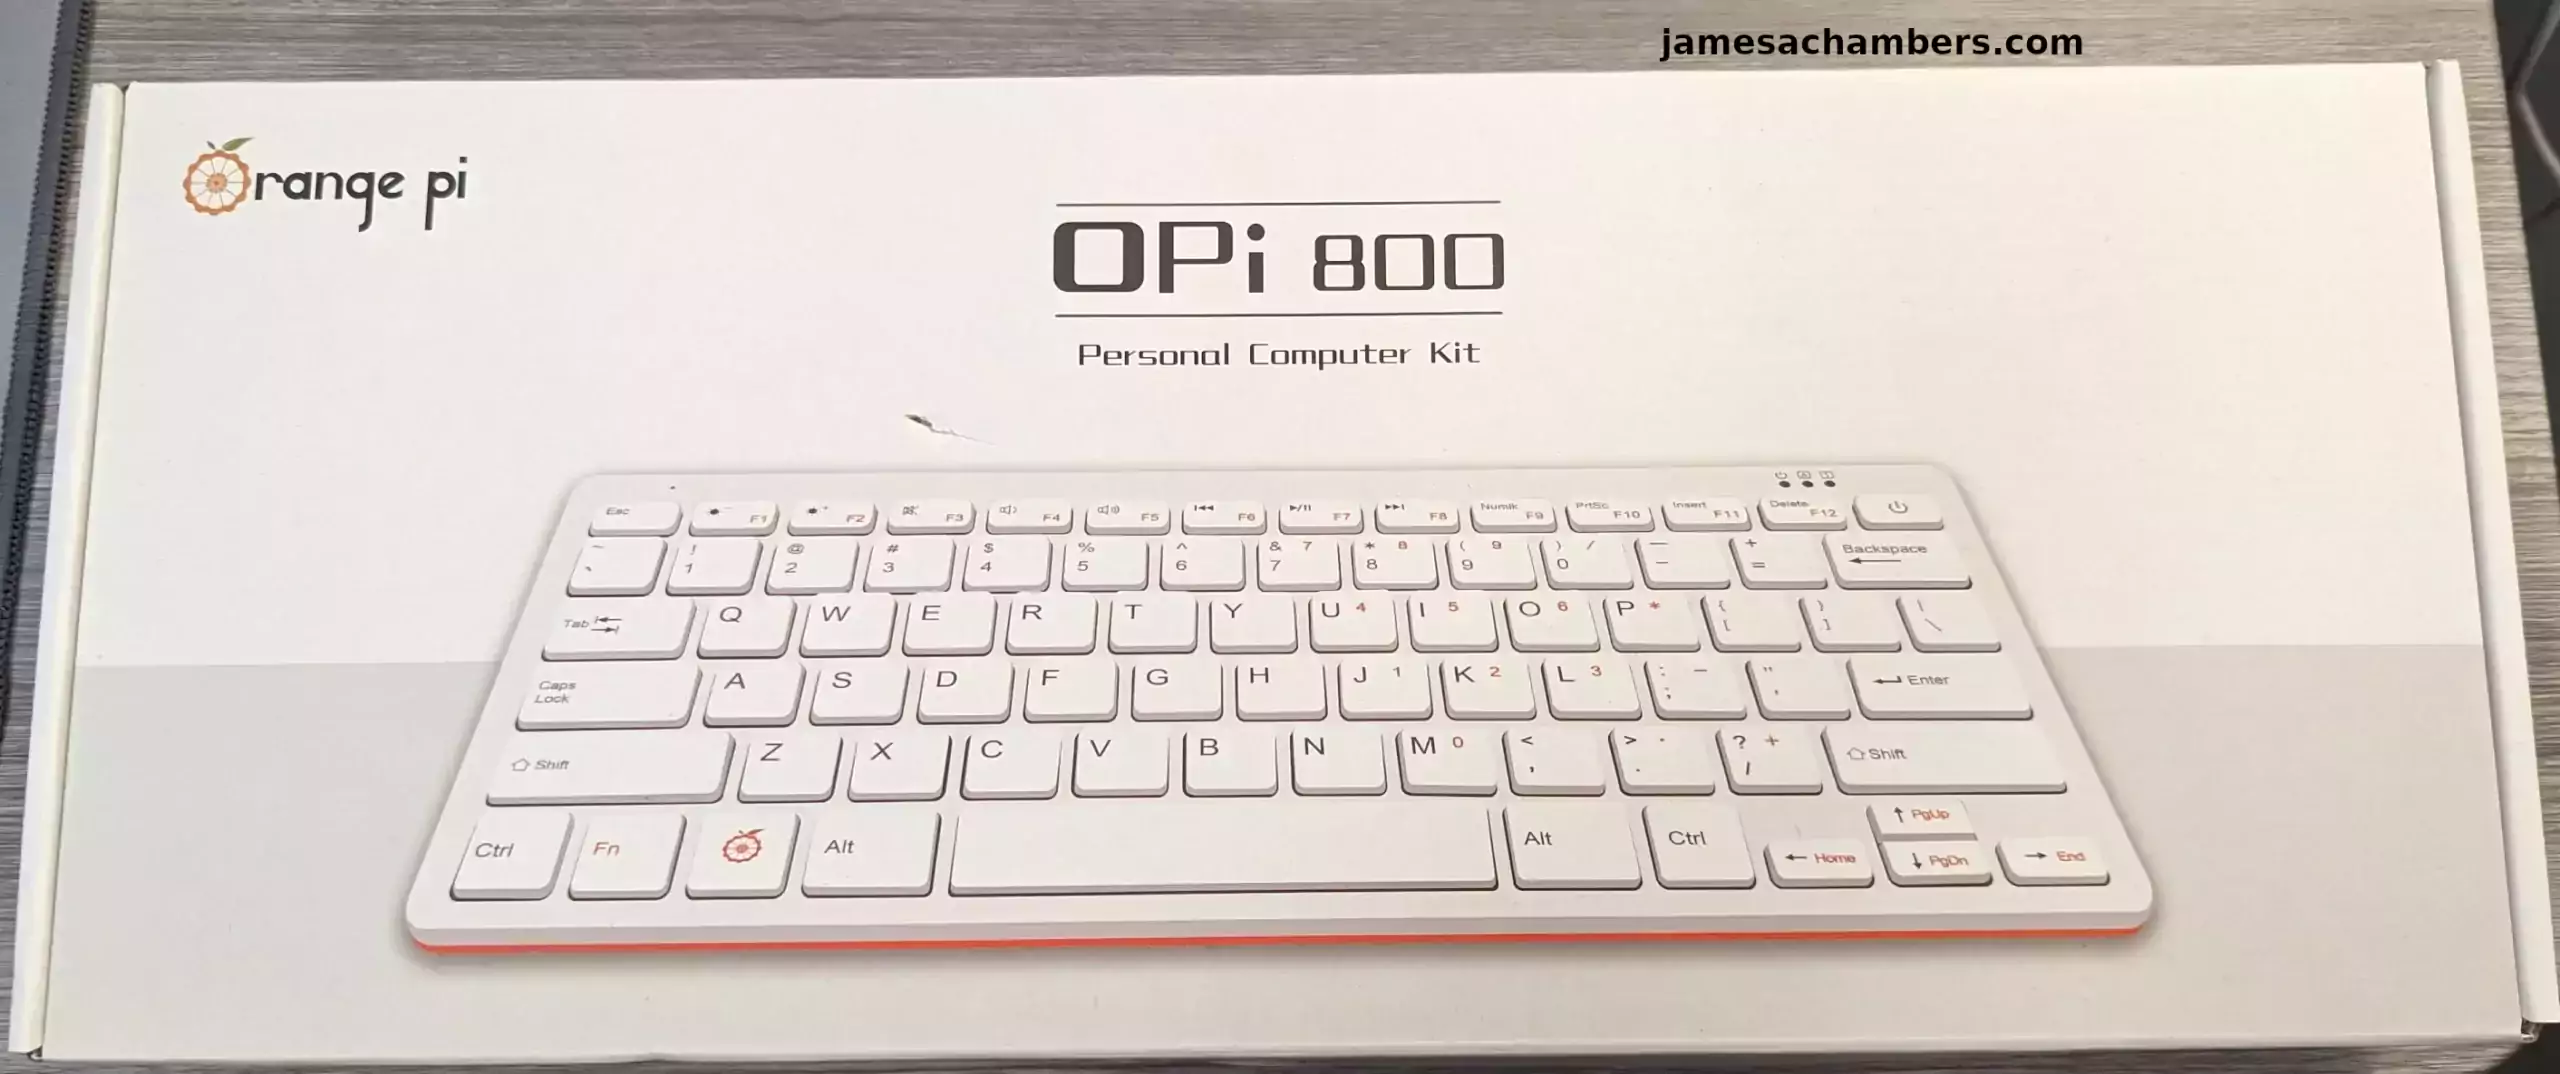 Orange Pi 800 - Packaging